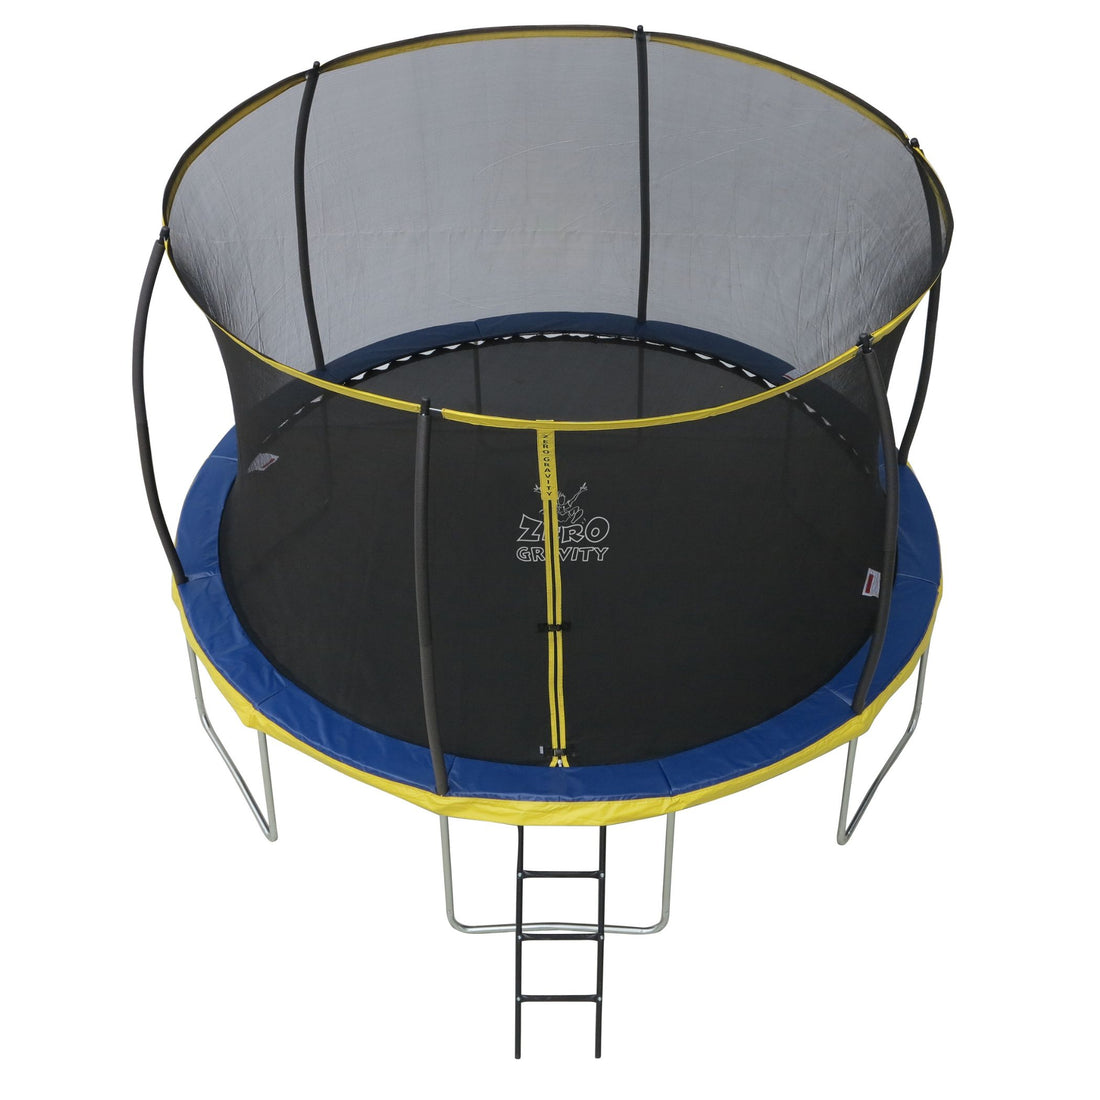 Trampolin (blau-gelb) Ø305cm inkl. Leiter - Nutzer bis 120kg - Ideal für bis zu 2 Kinder